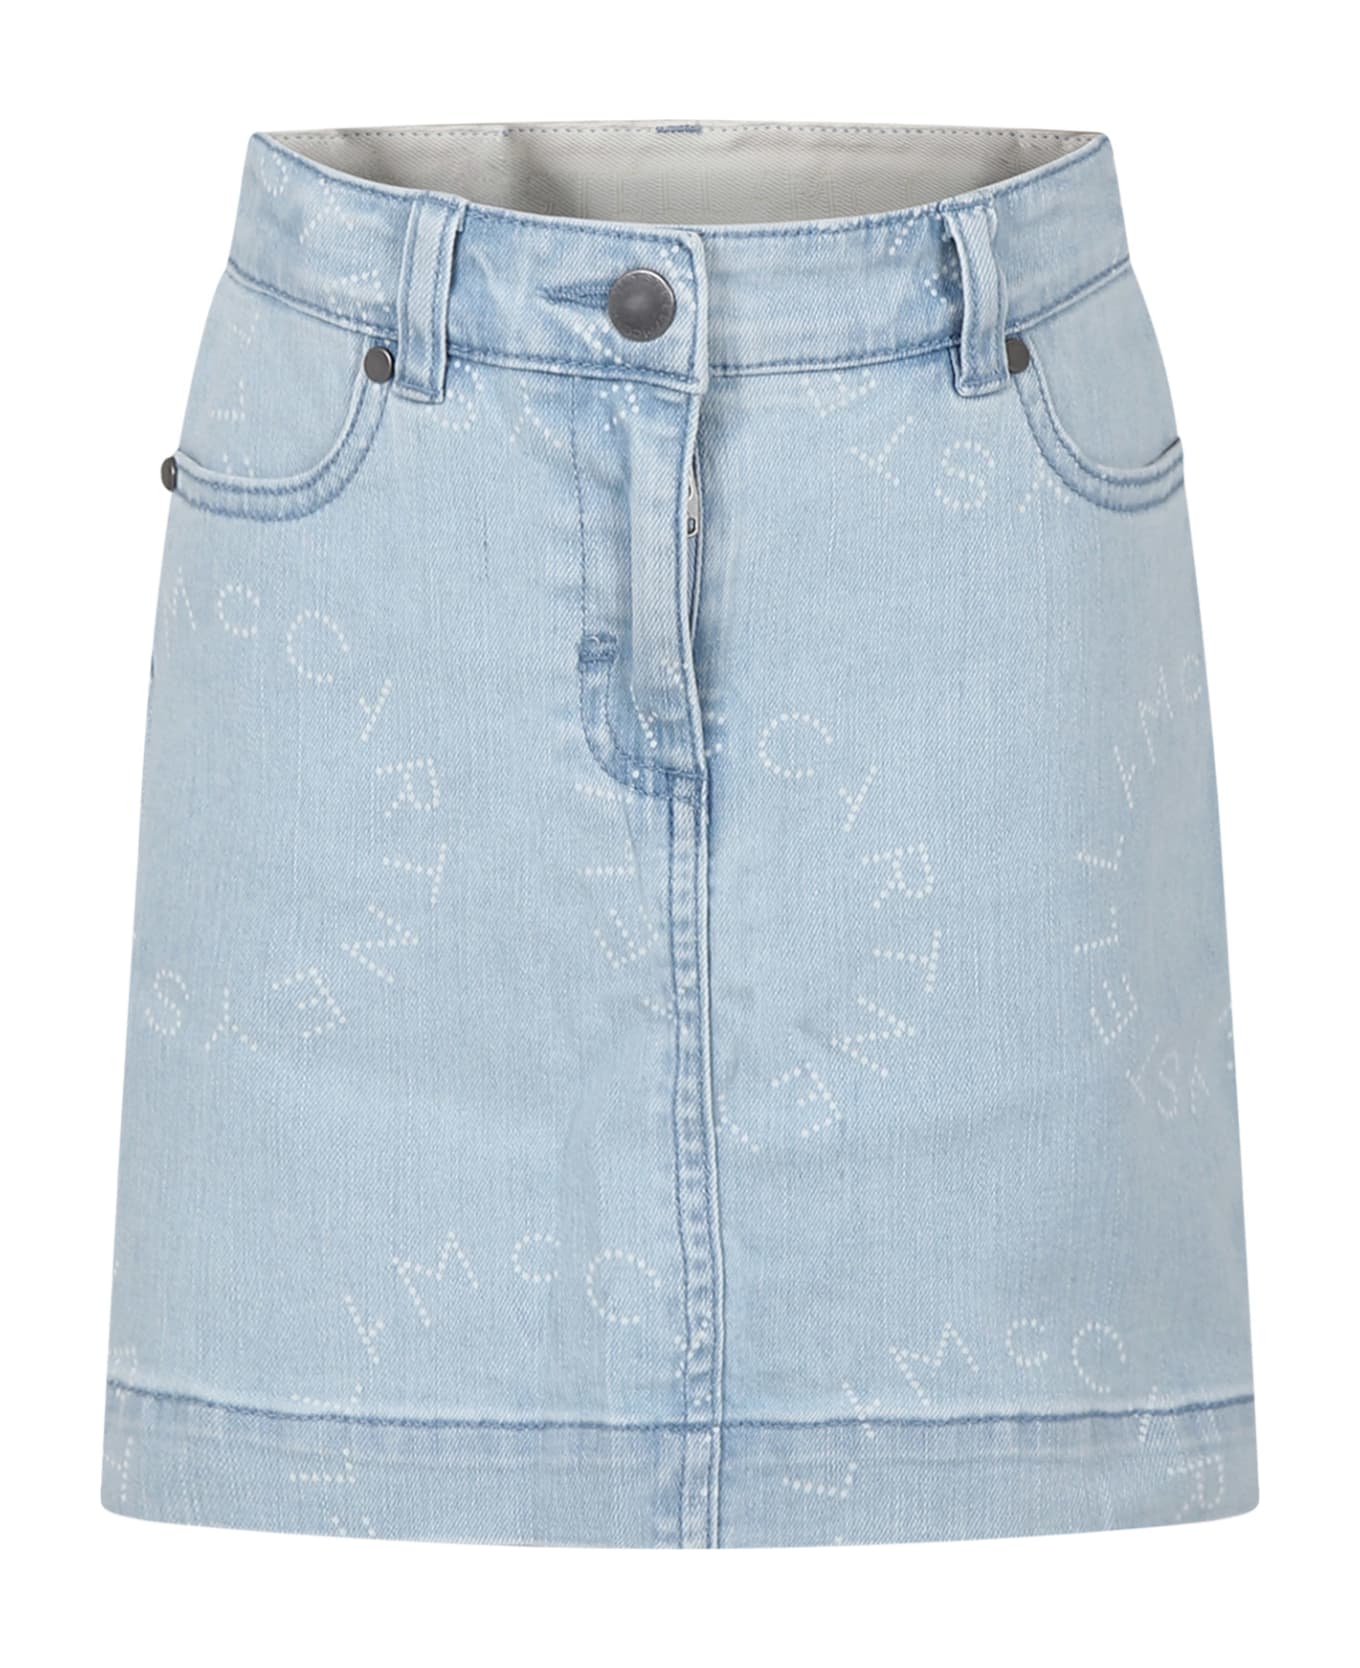 Stella McCartney Kids Denim Skirt For Girl With Logo - Blue ボトムス